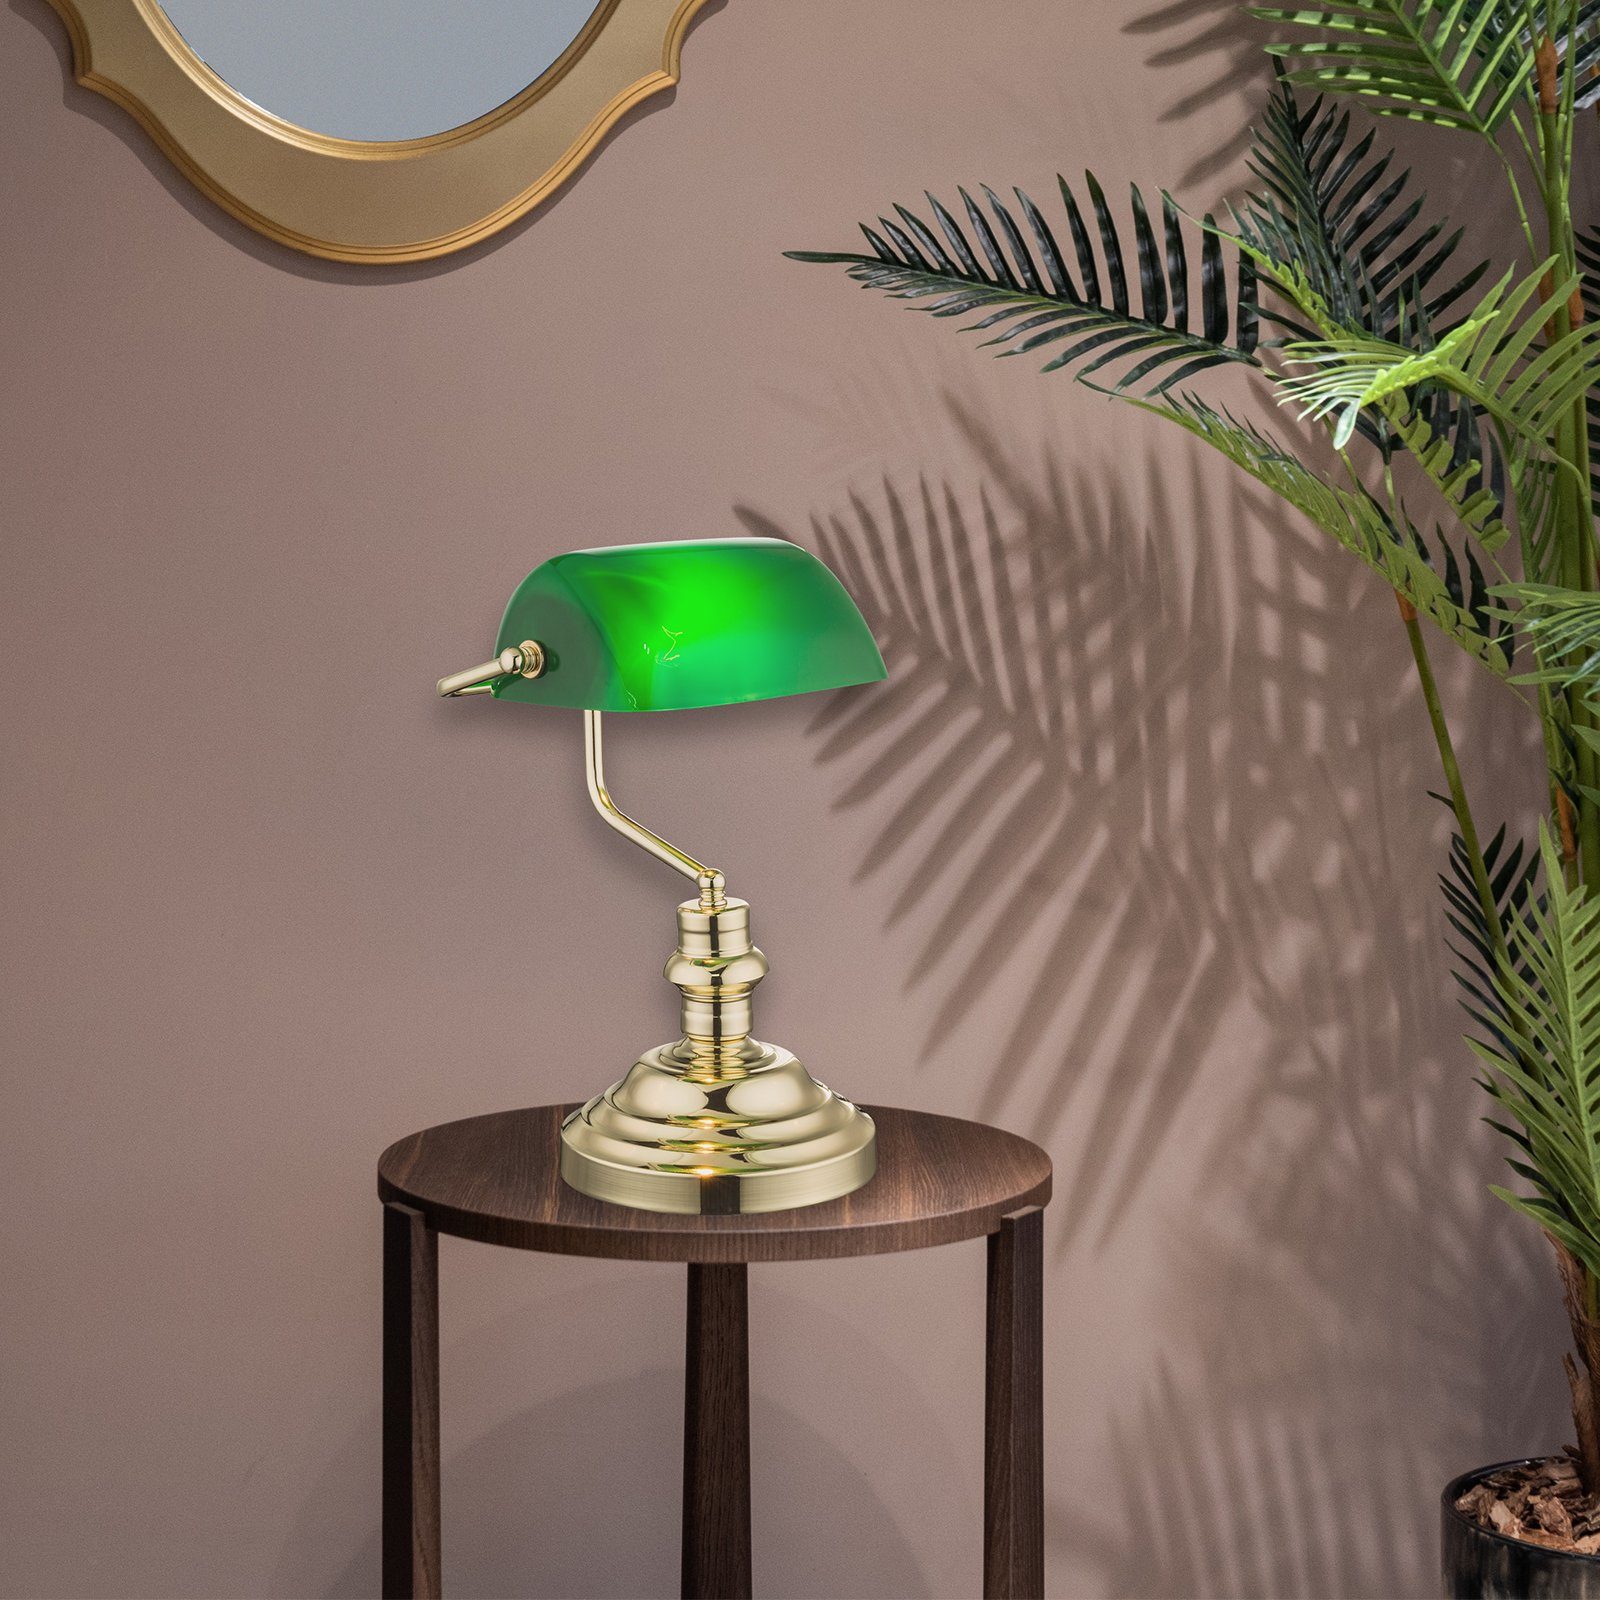 Globo Tischleuchte Tischlampe Tischleuchte Schreibtischlampe retro Banker Lampe grün